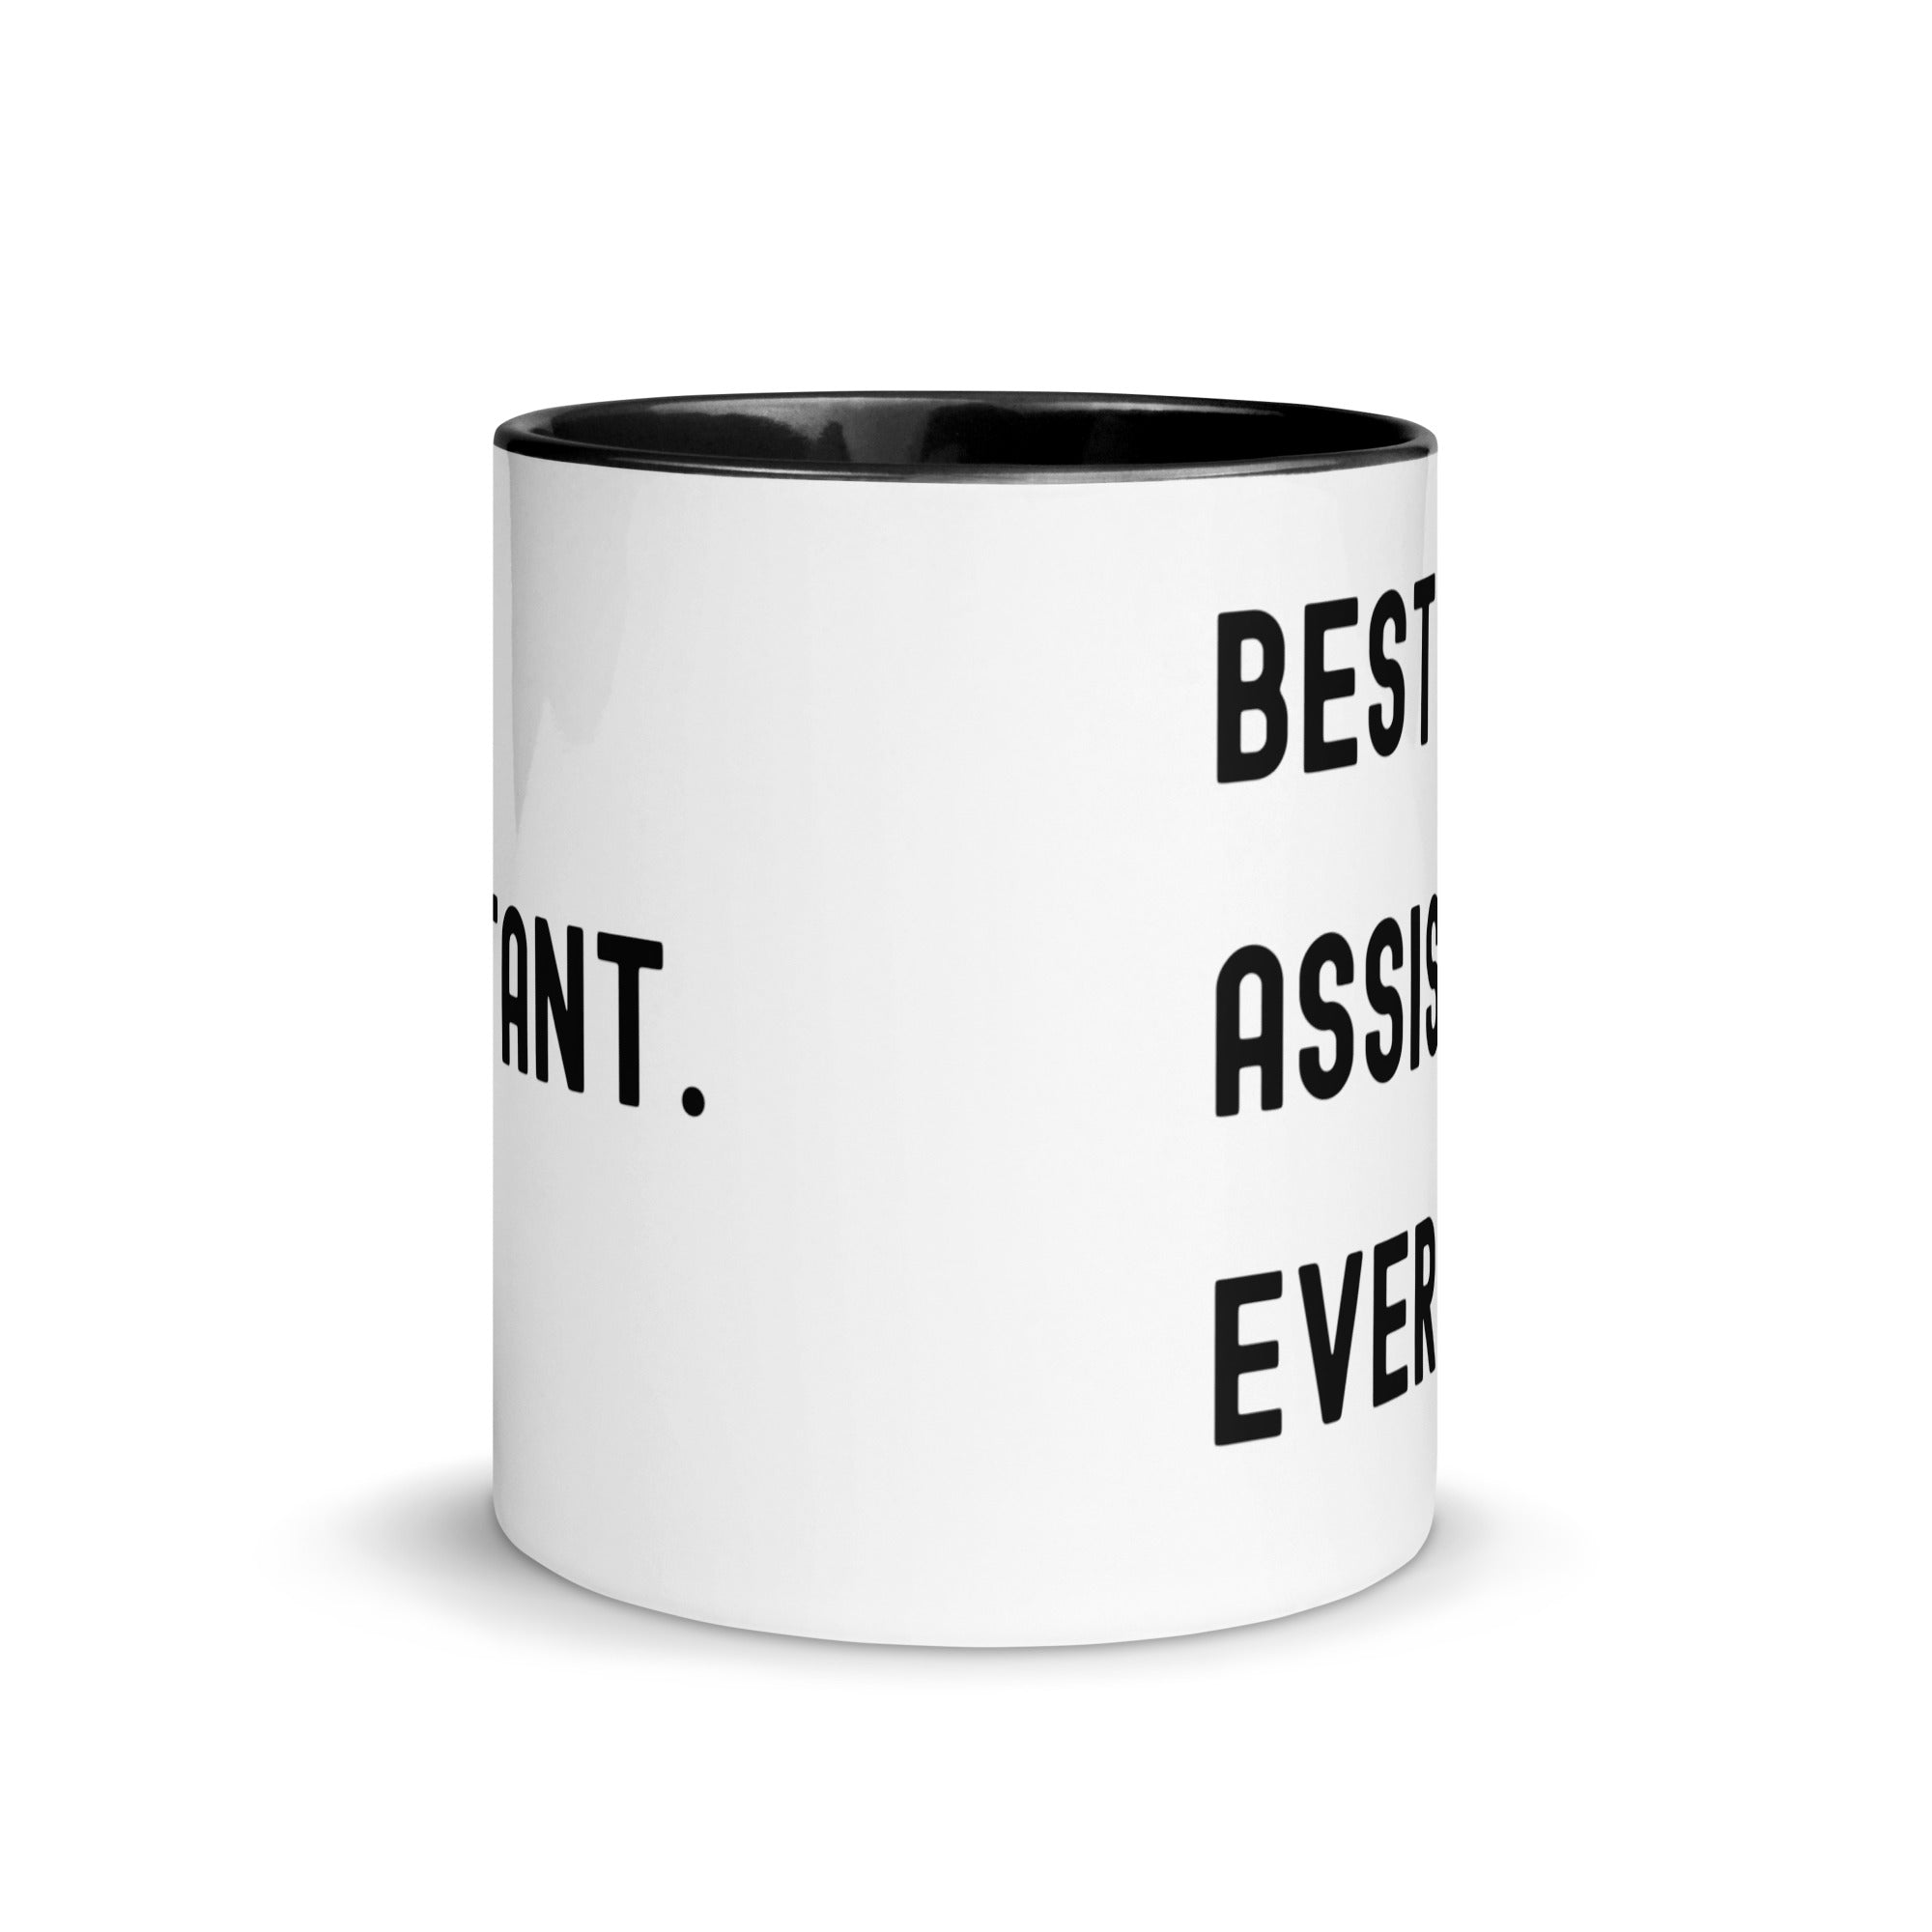 Mug with Color Inside | Best. Assistant. Ever.